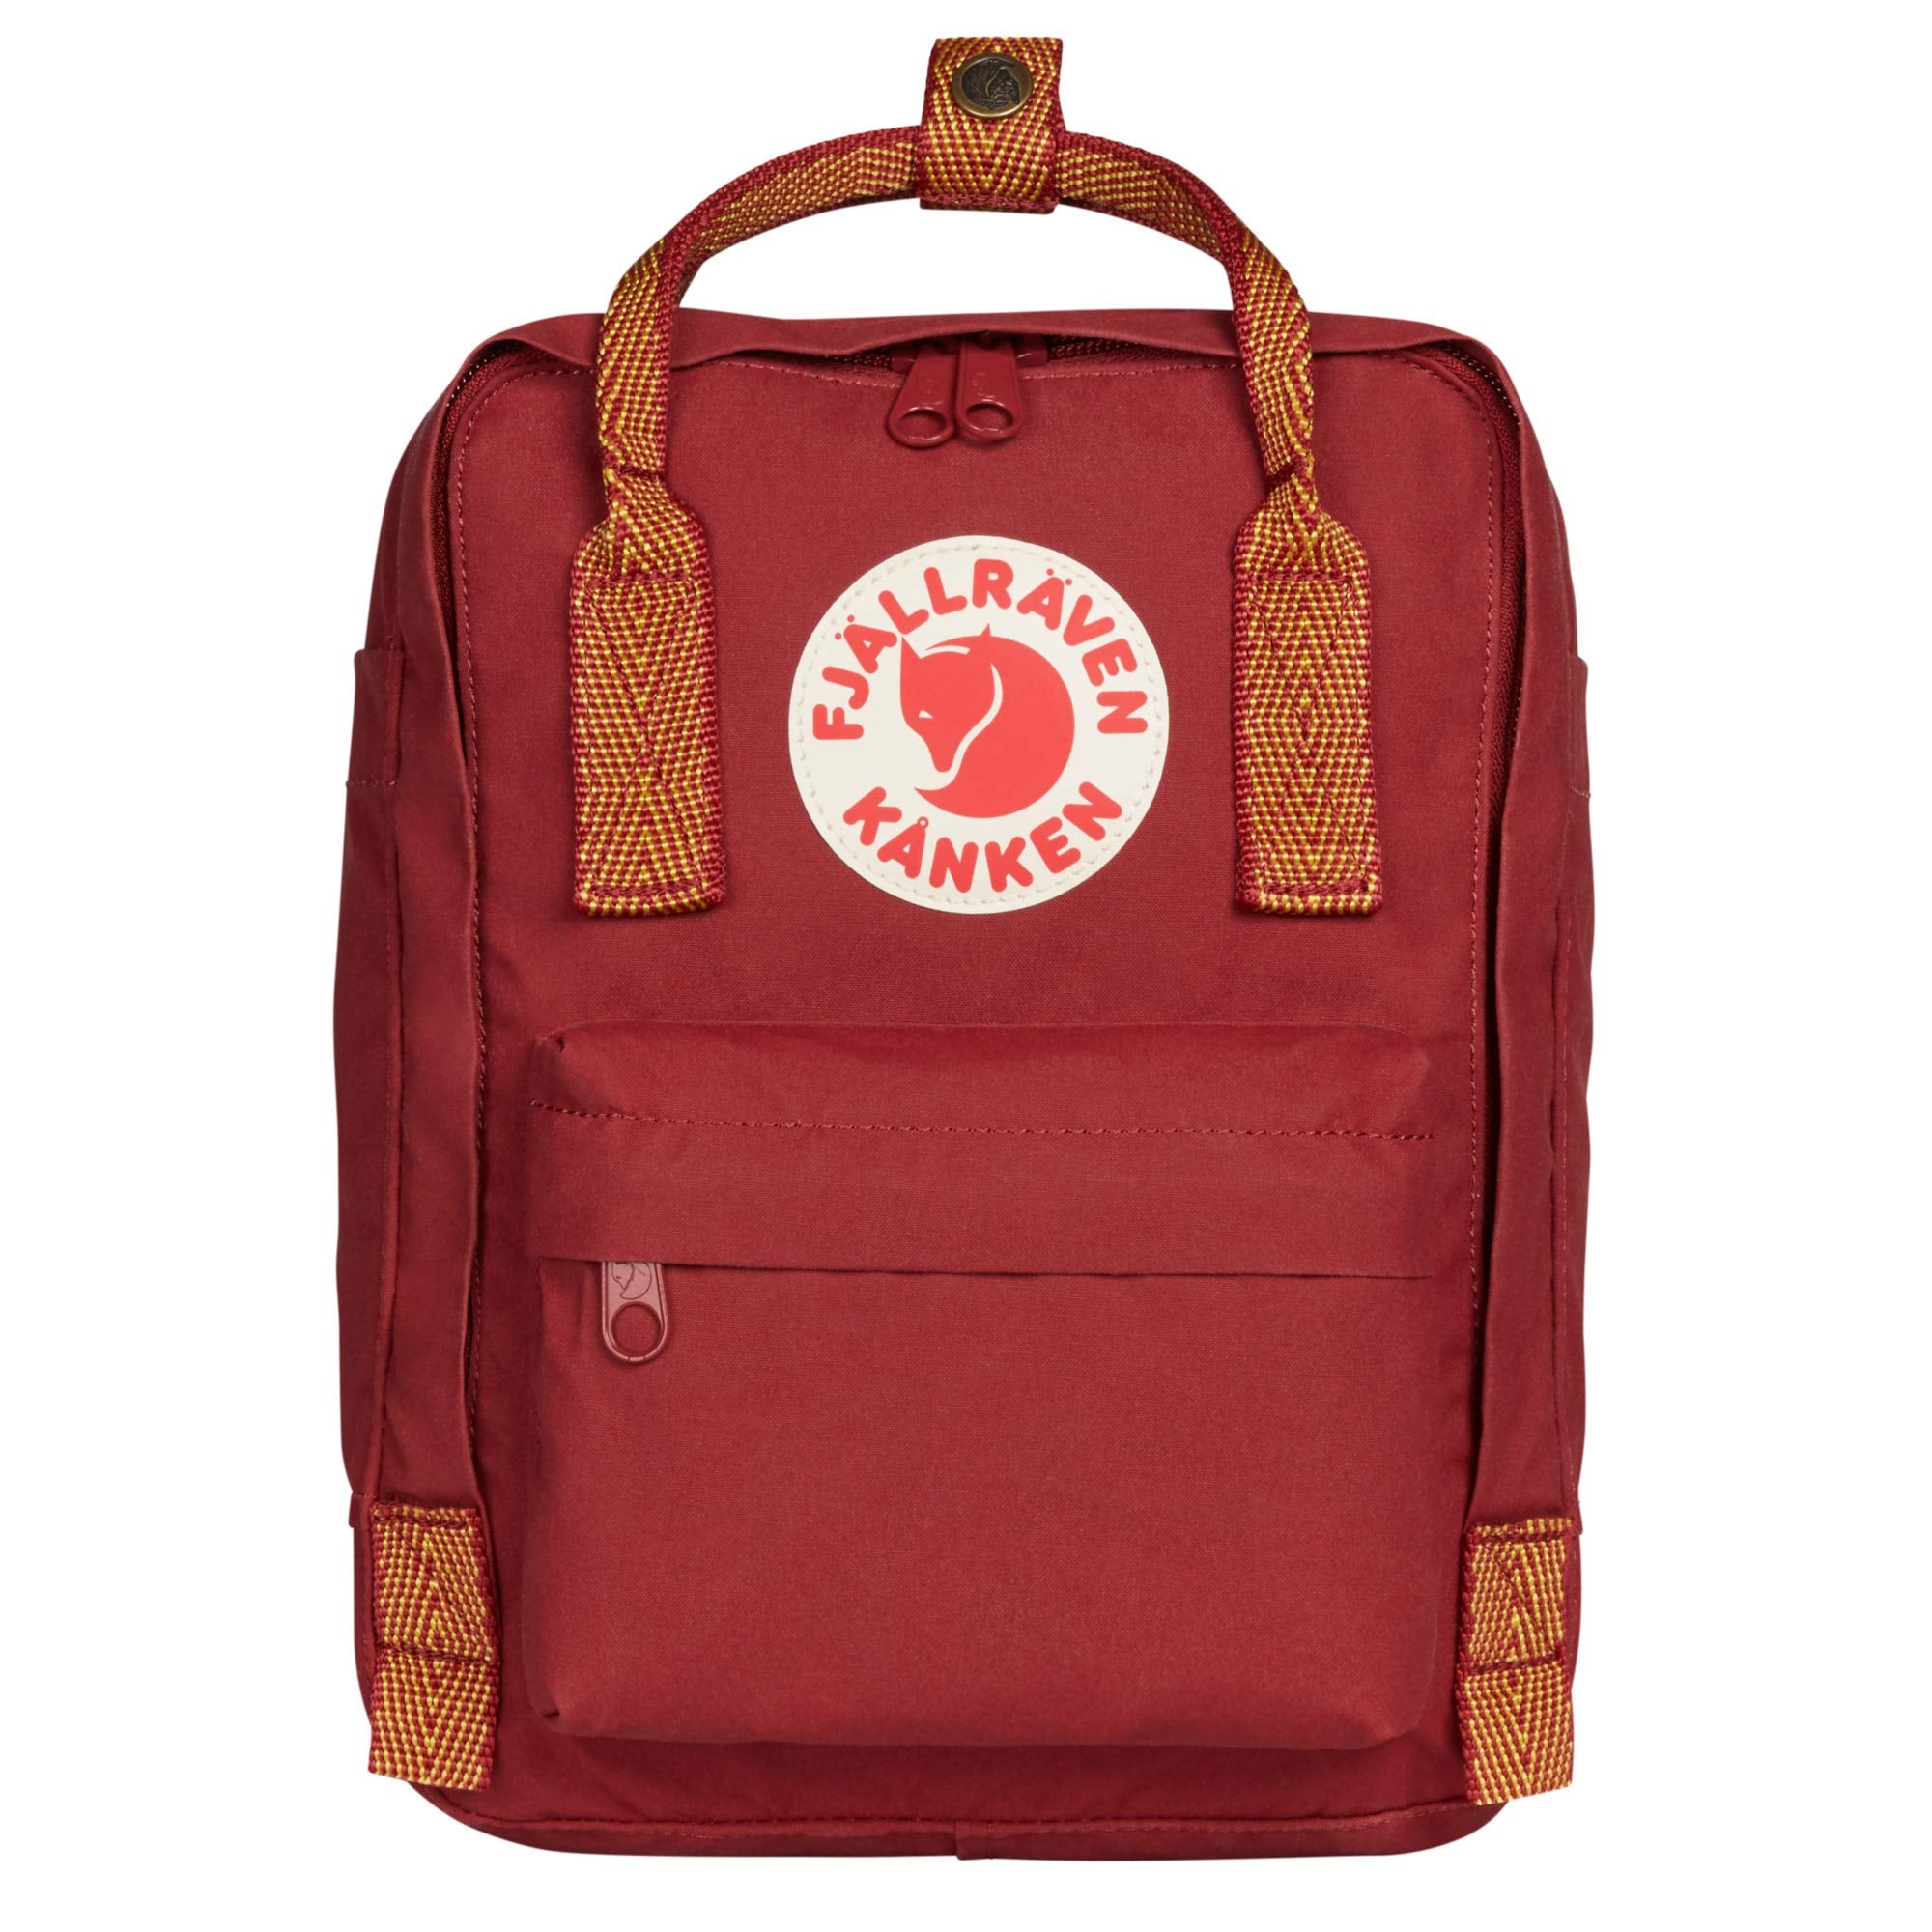 Eversac Gypsy Mini Backpack Red